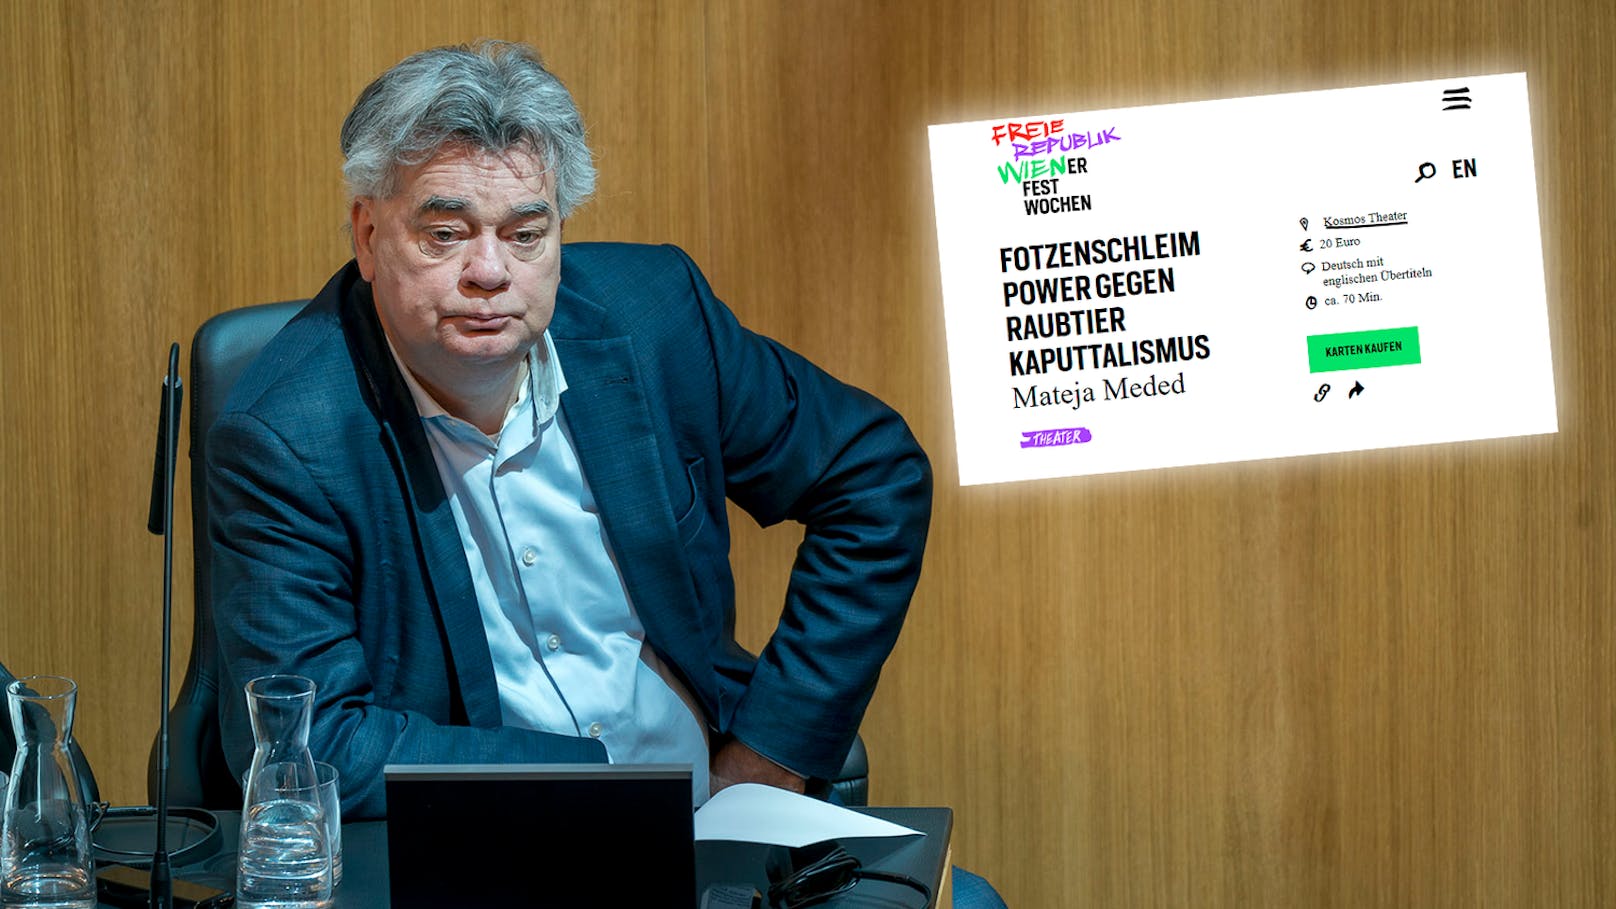 FPÖ will von Kogler alles über "Fotzenschleim" wissen